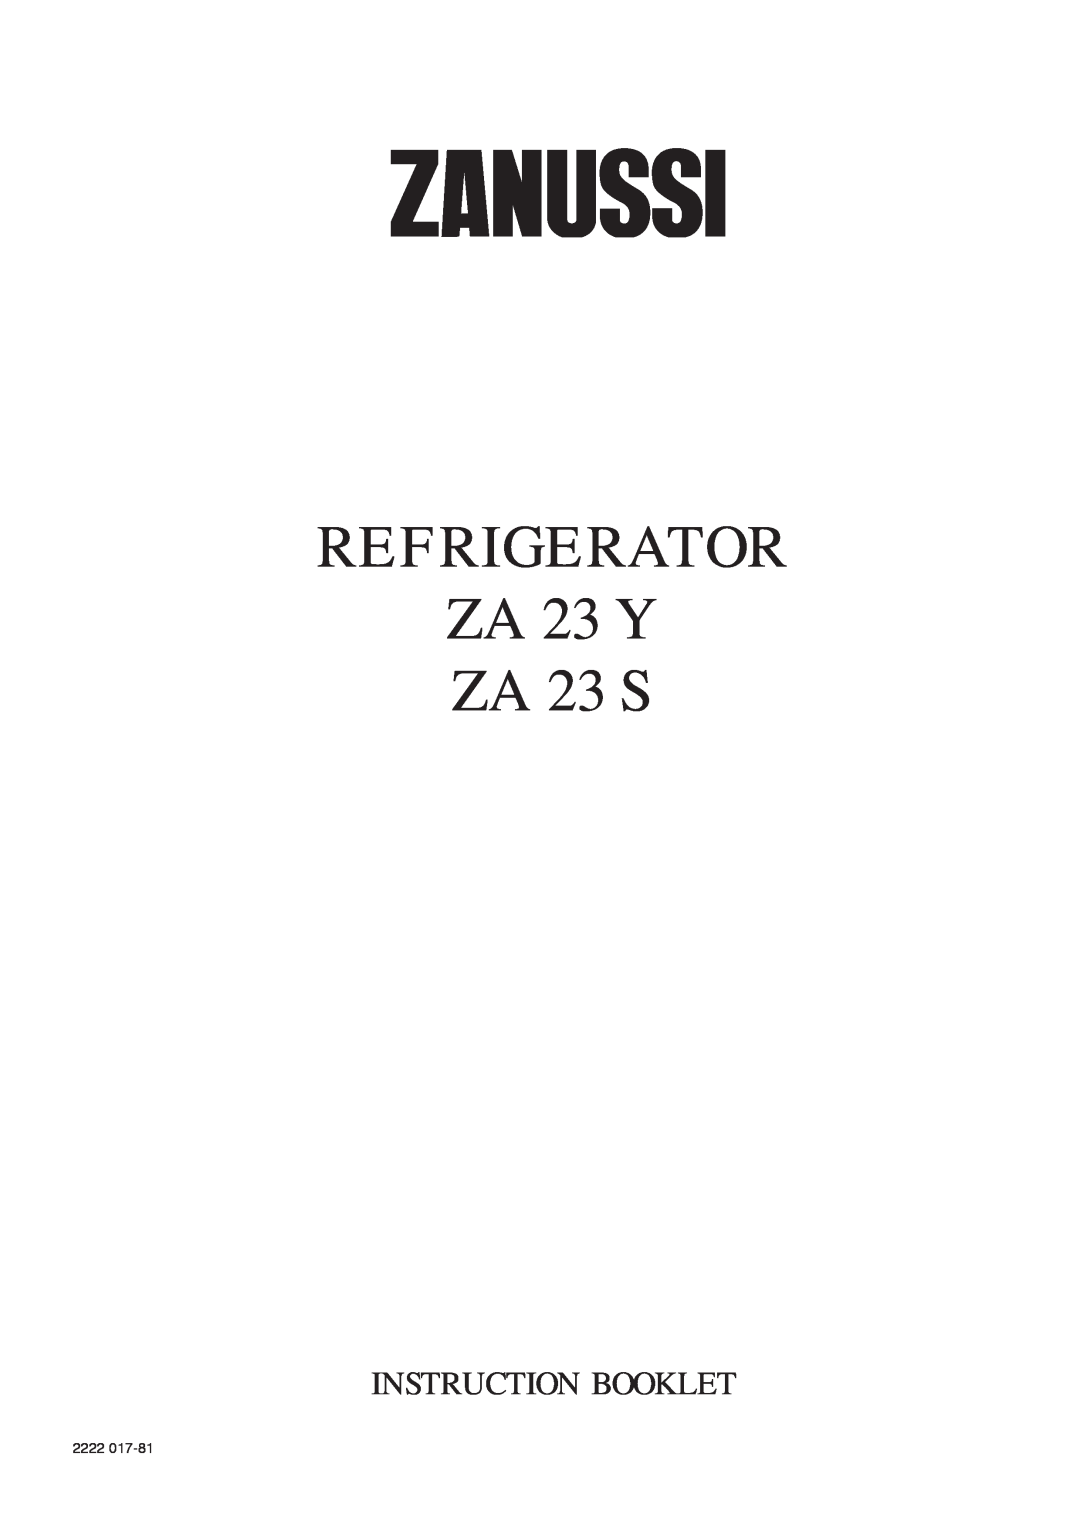 Zanussi manual REFRIGERATOR ZA 23 Y ZA 23 S, Instruction Booklet, 2222 